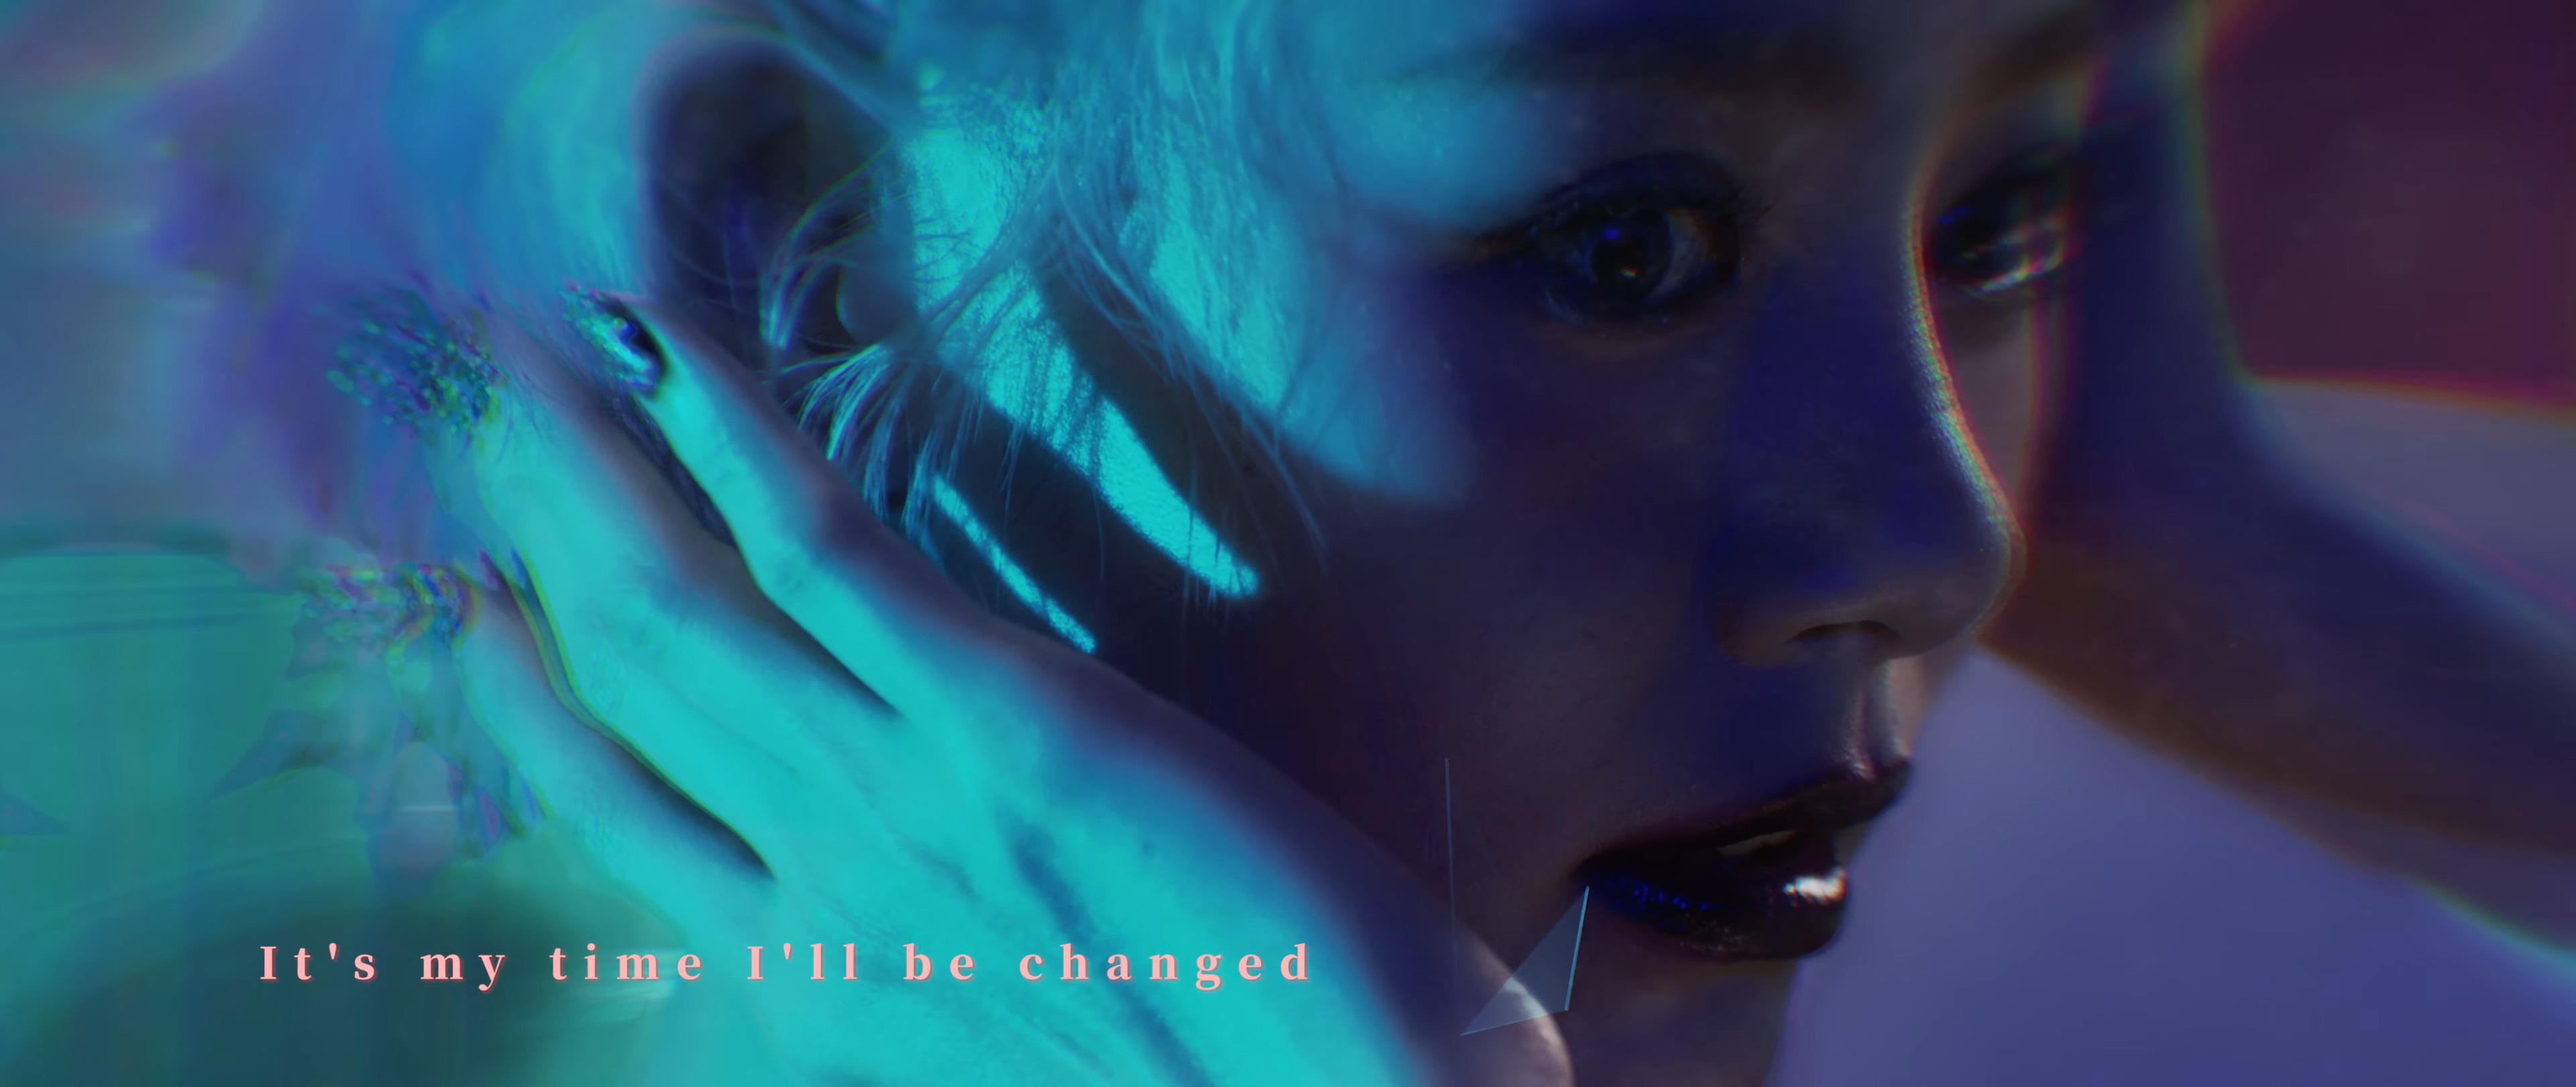 林明禎 MinChen《Change》Official MV 【4K】 278MB